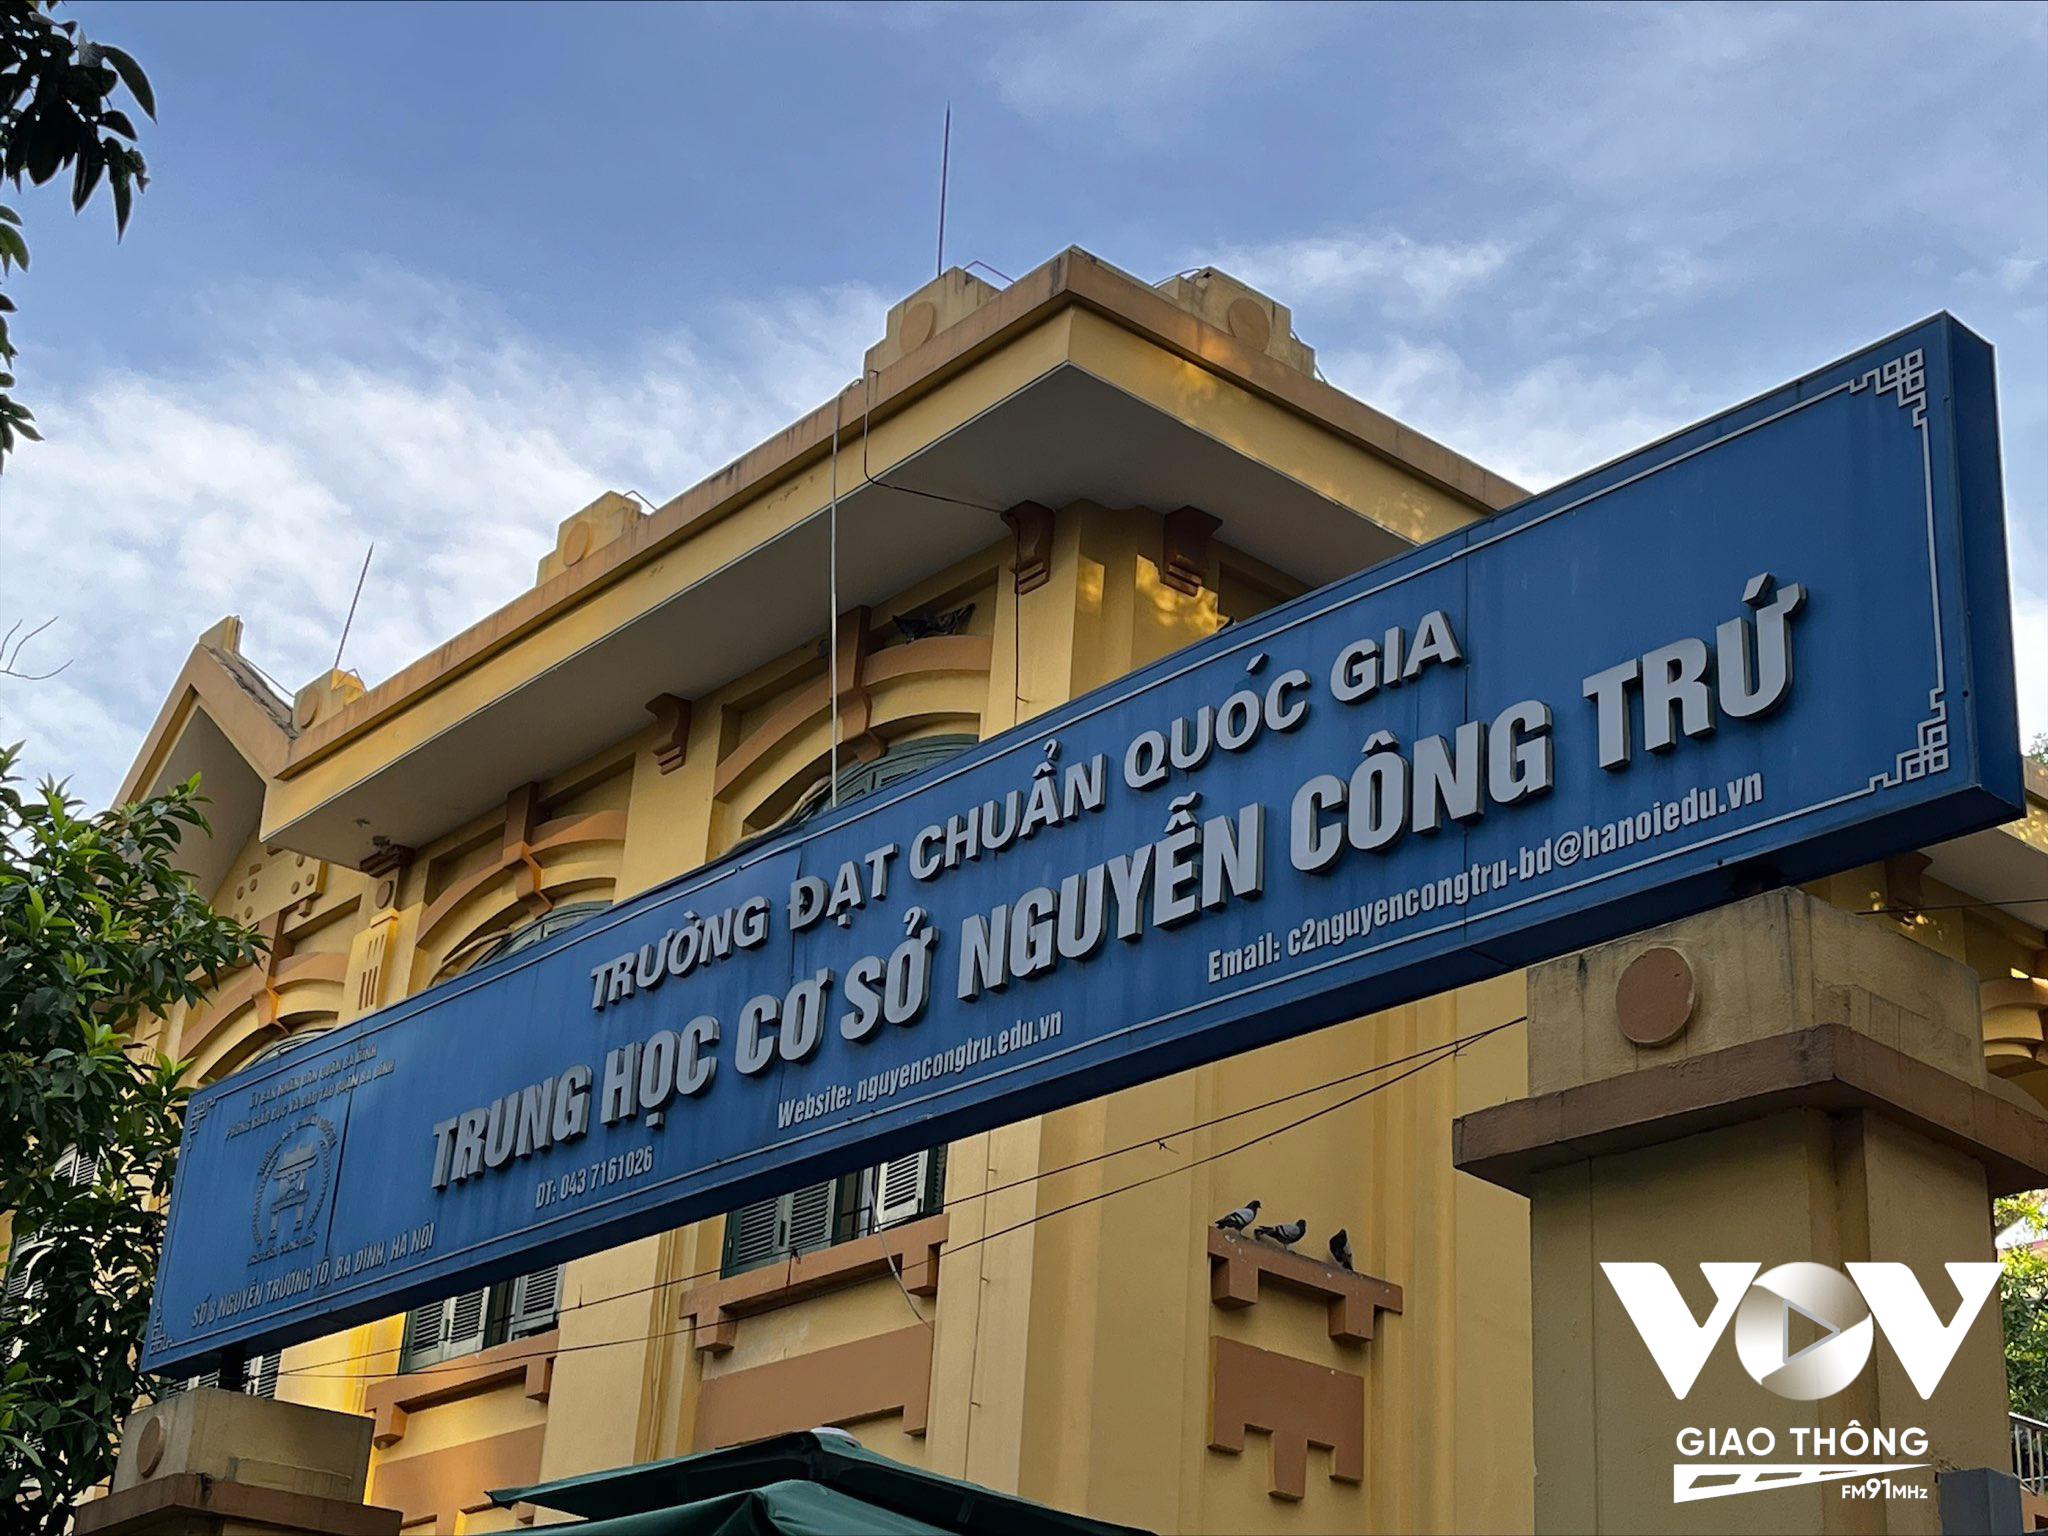 Ghi nhận tại cổng trường THCS Nguyễn Công Trứ - cũng là 1 trường đạt chuẩn quốc gia nên sức nóng cũng không hề kém cạnh các trường khác (Ảnh: Quang Hùng)